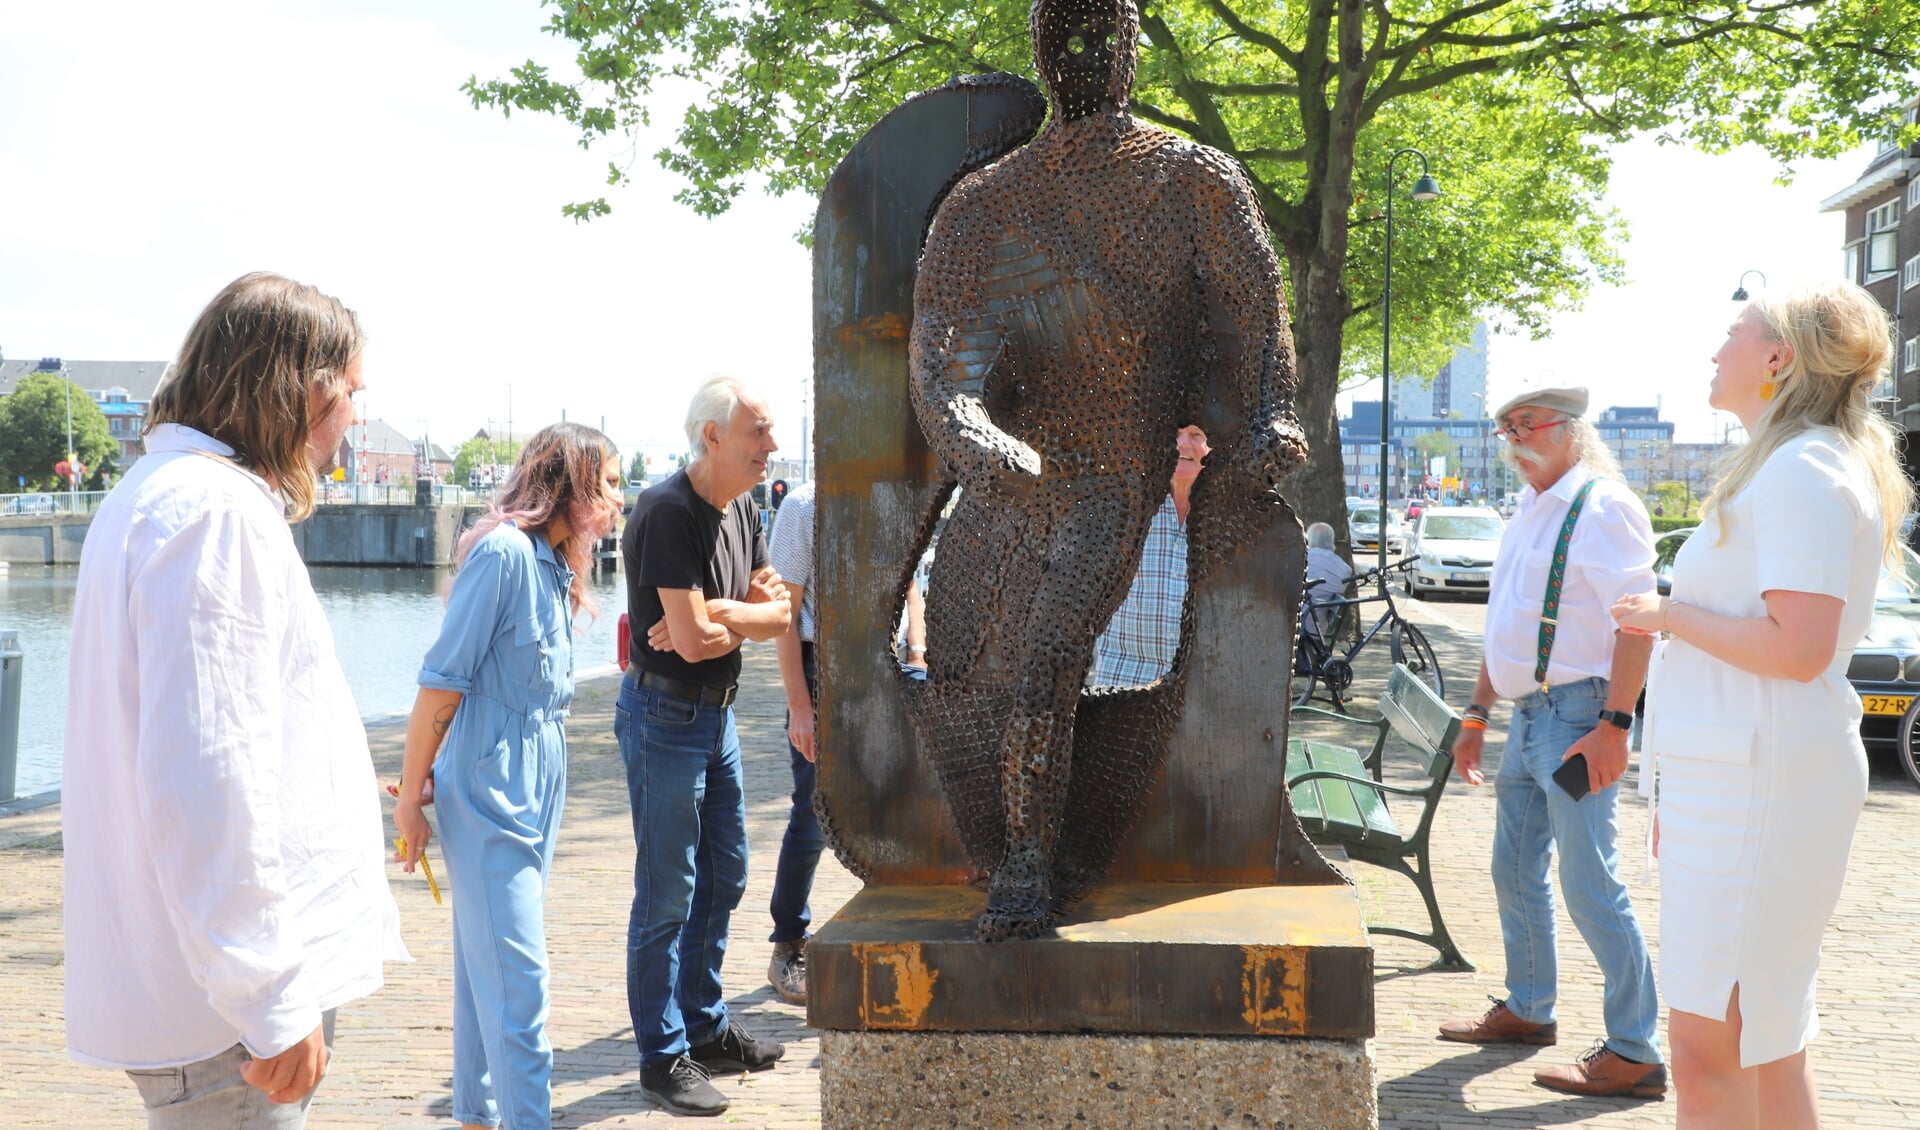 Belangstellende Vlaardingers, onder wie nachtburgemeester Leonardus IJdo, observeren het monument dat zojuist onthuld is door Frans de Winter en Lianne van Kalken, links en rechts op de foto.